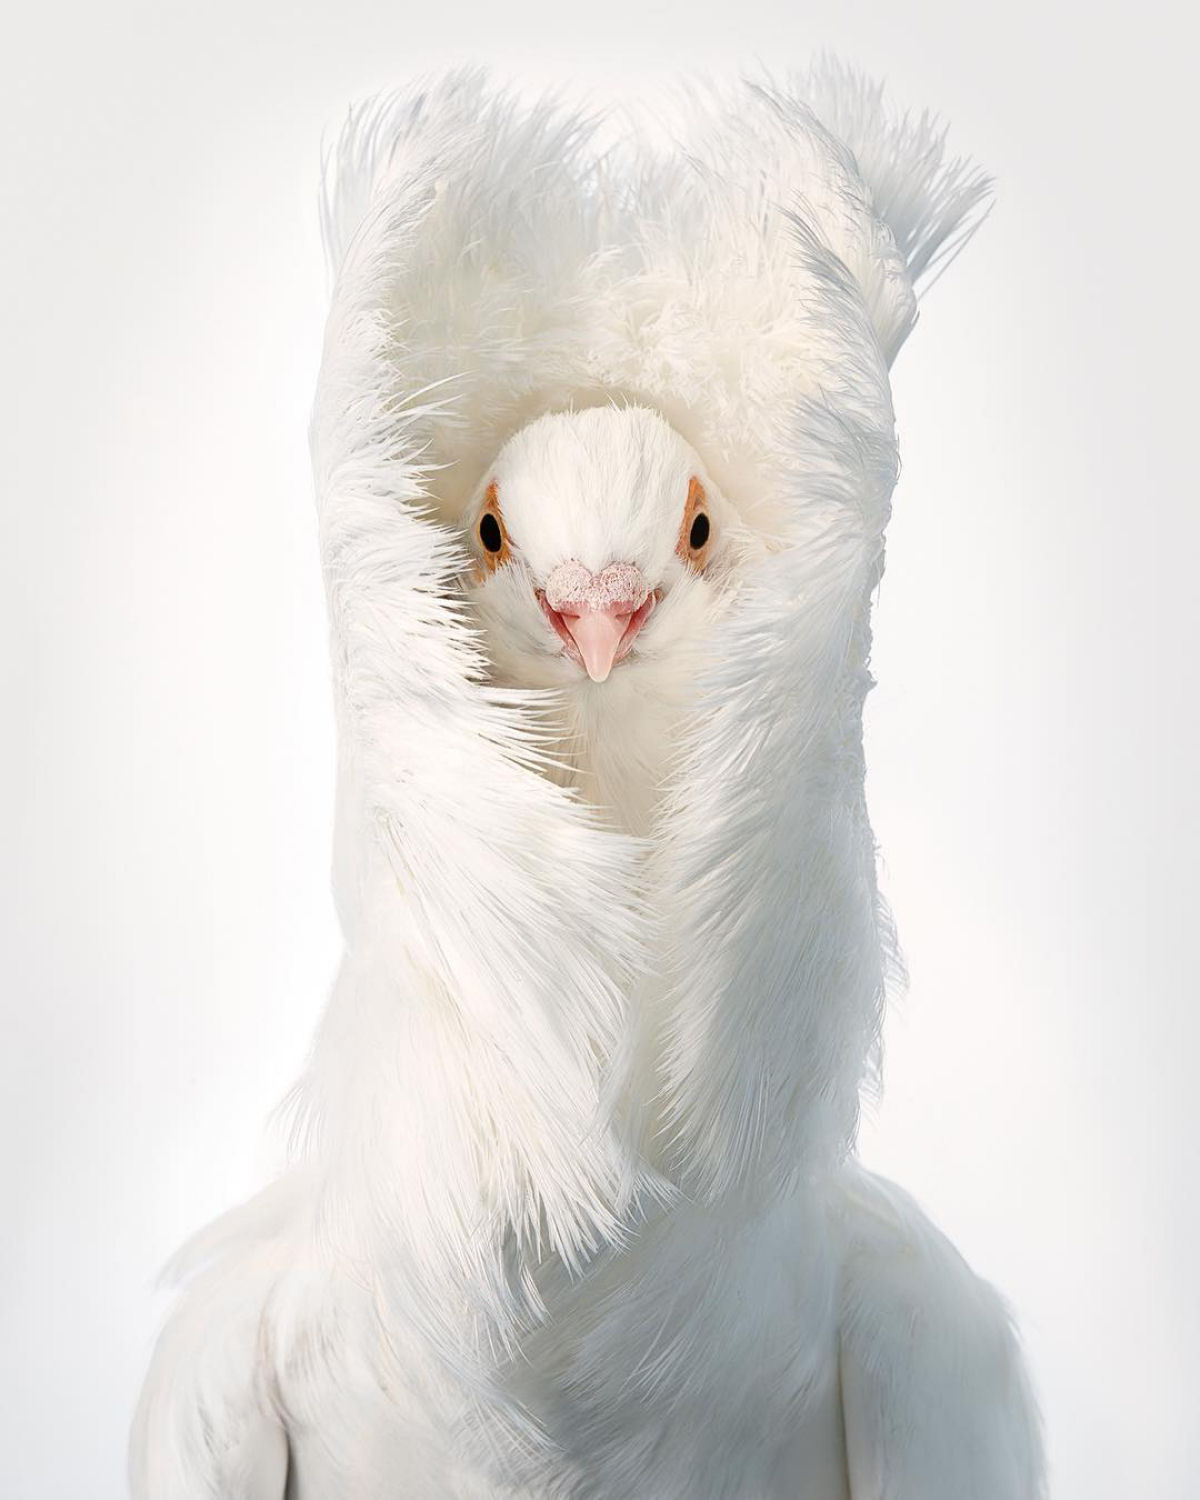 Fotógrafo londrino continua emoldurando pássaros ameaçados de extinção em retratos impressionantes 09